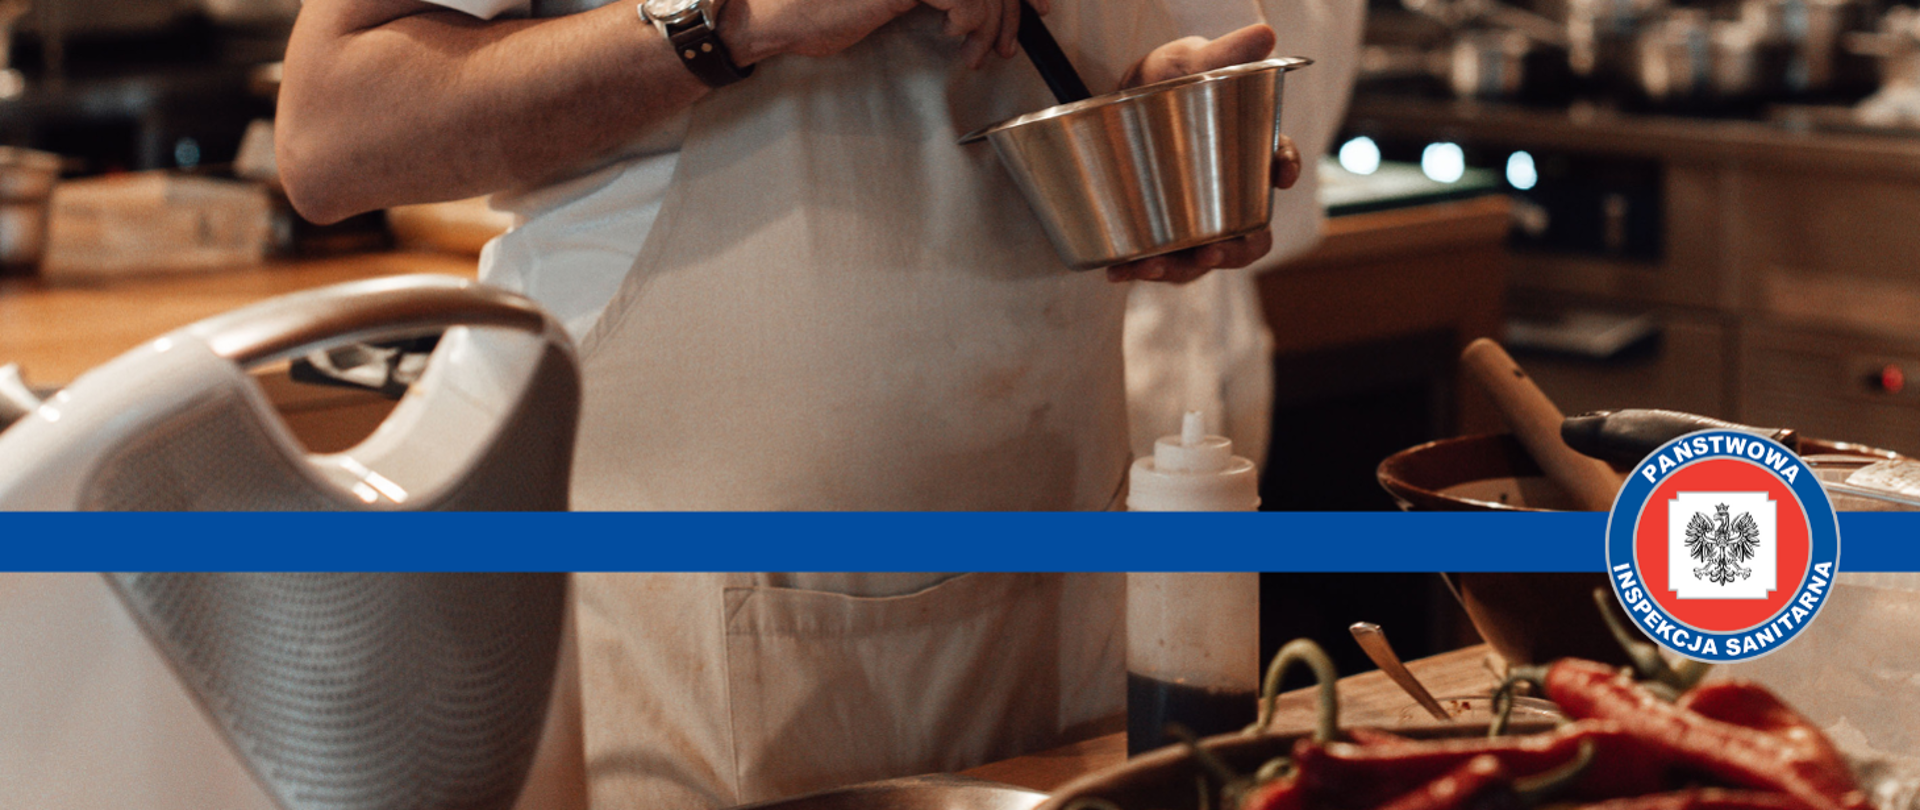 zdjęcie częściowo przedstawiające pracownika gastronomii wykonującego jakąś potrawę, na środku zdjęcia znajduje się logo Państwowej Inspekcji Sanitarnej.